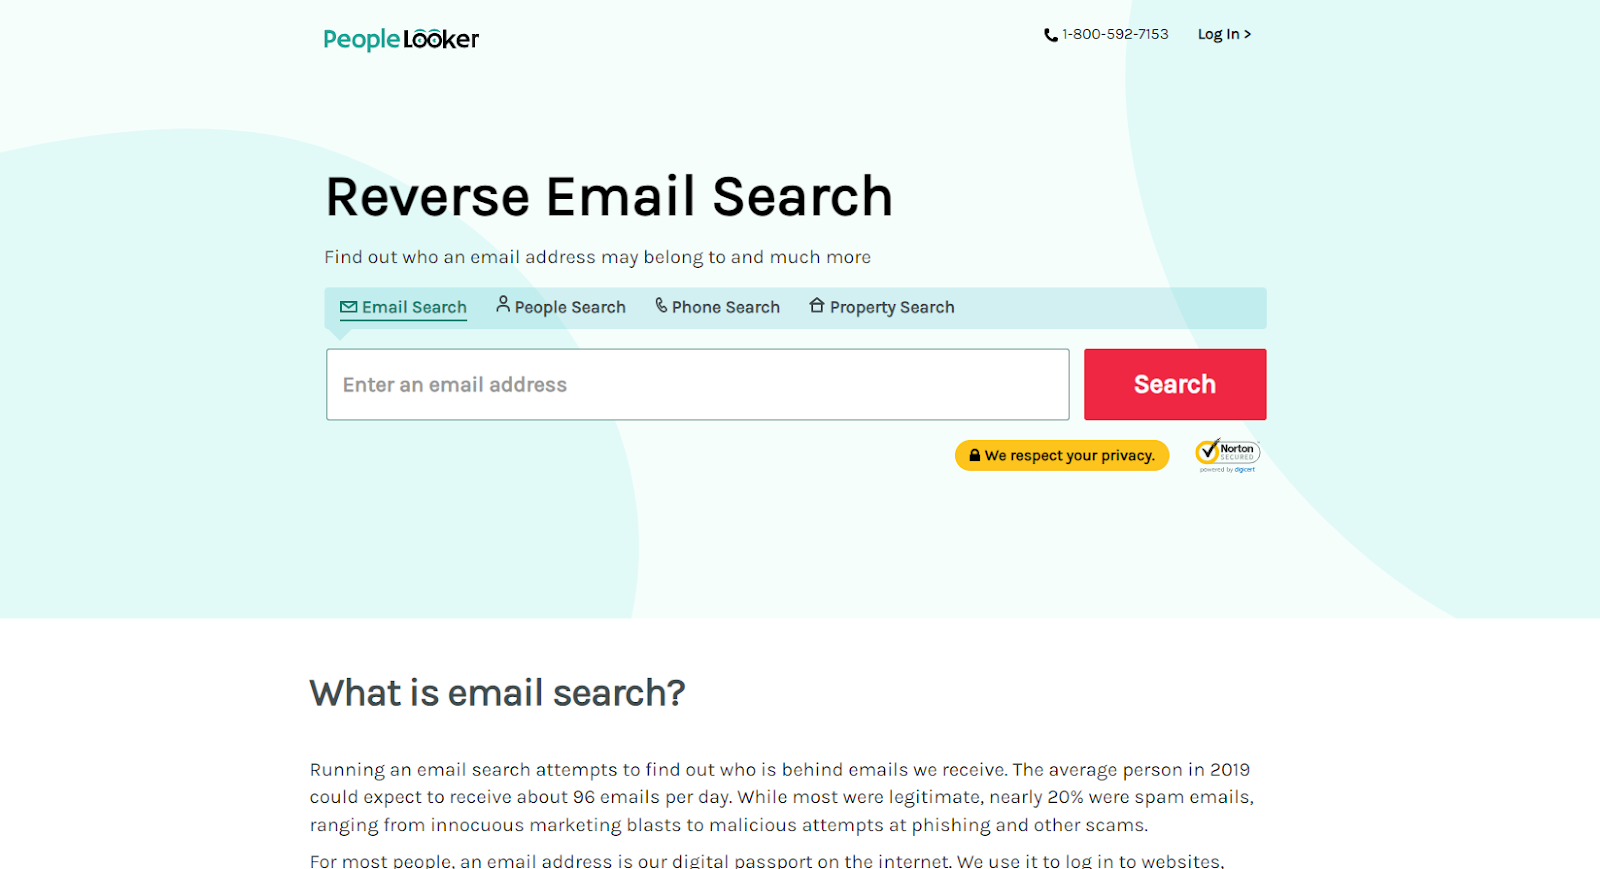 Best Reverse Email Lookup Tools: PeopleLooker